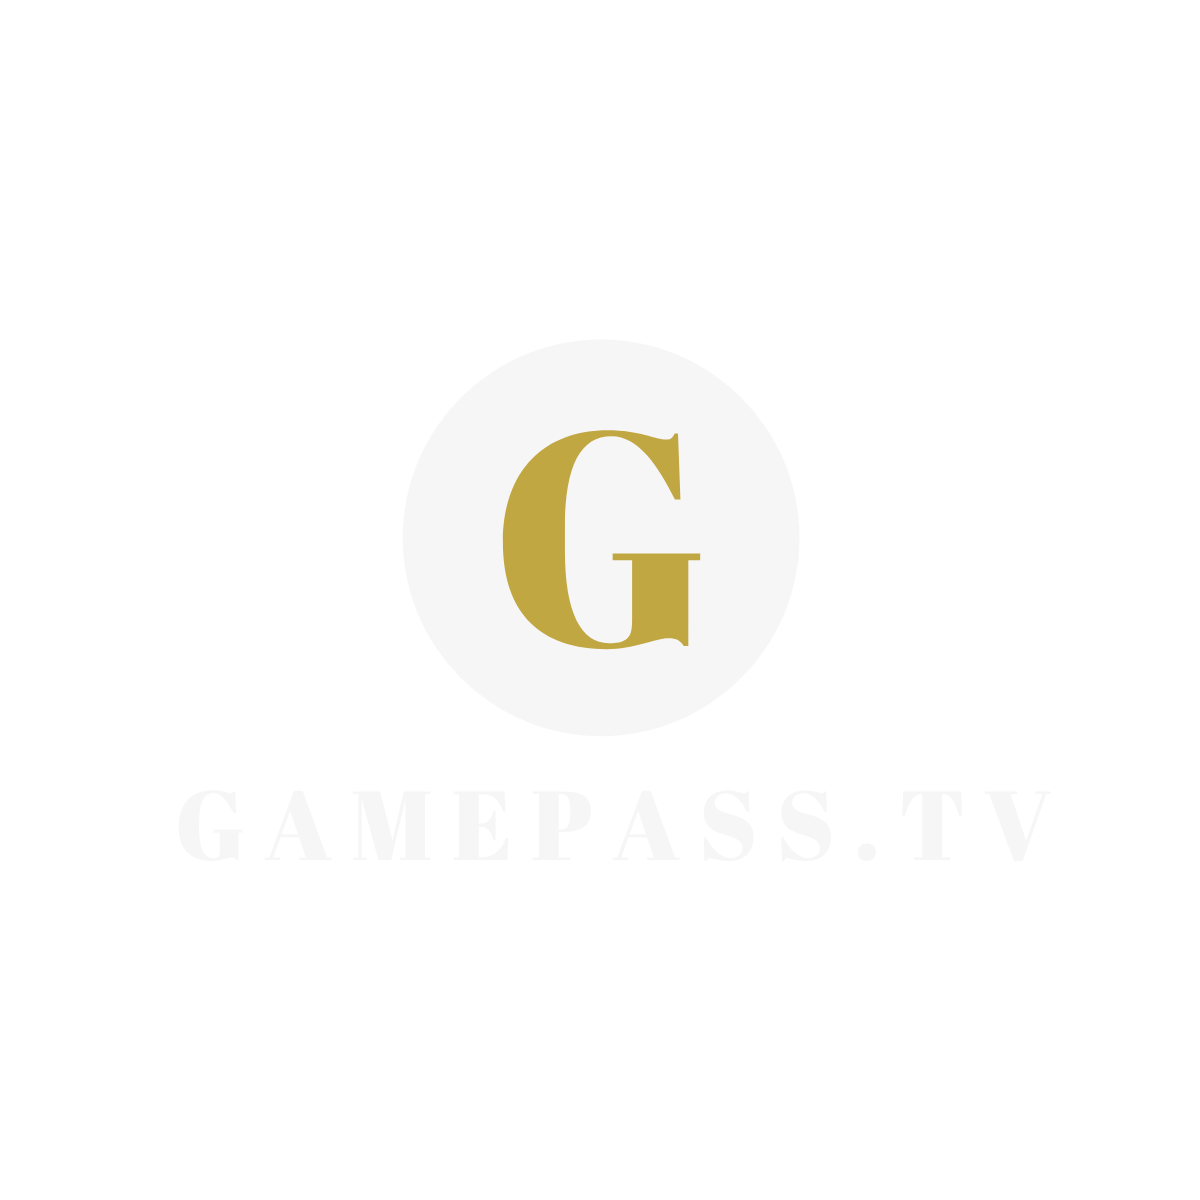 (c) Gamepass.tv